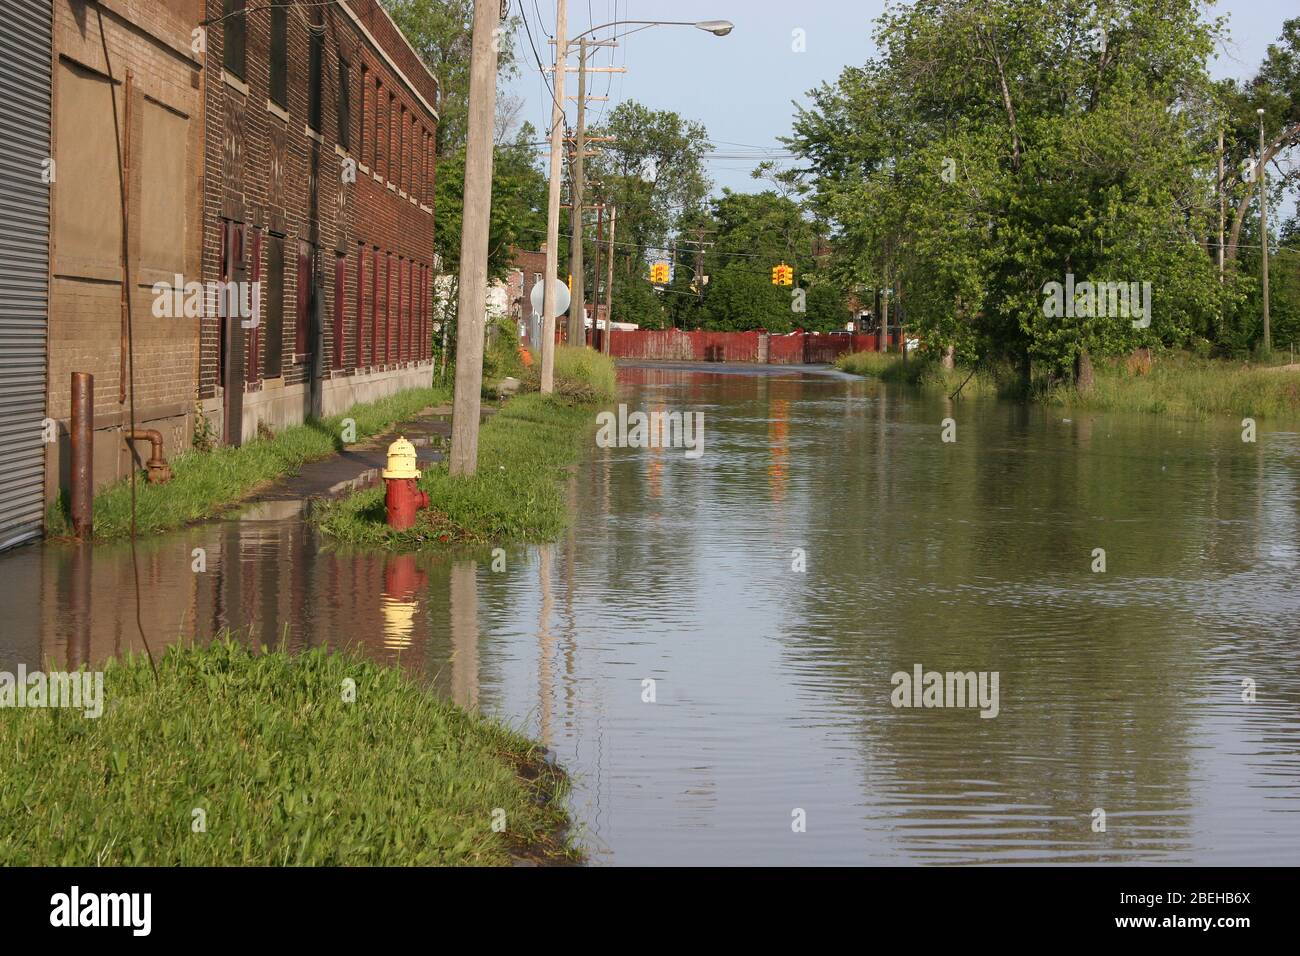 Strade inondate, rete idrica interrata, lato est, Detroit, Michigan, USA, 2006, di Dembinsky Photo Assoc Foto Stock